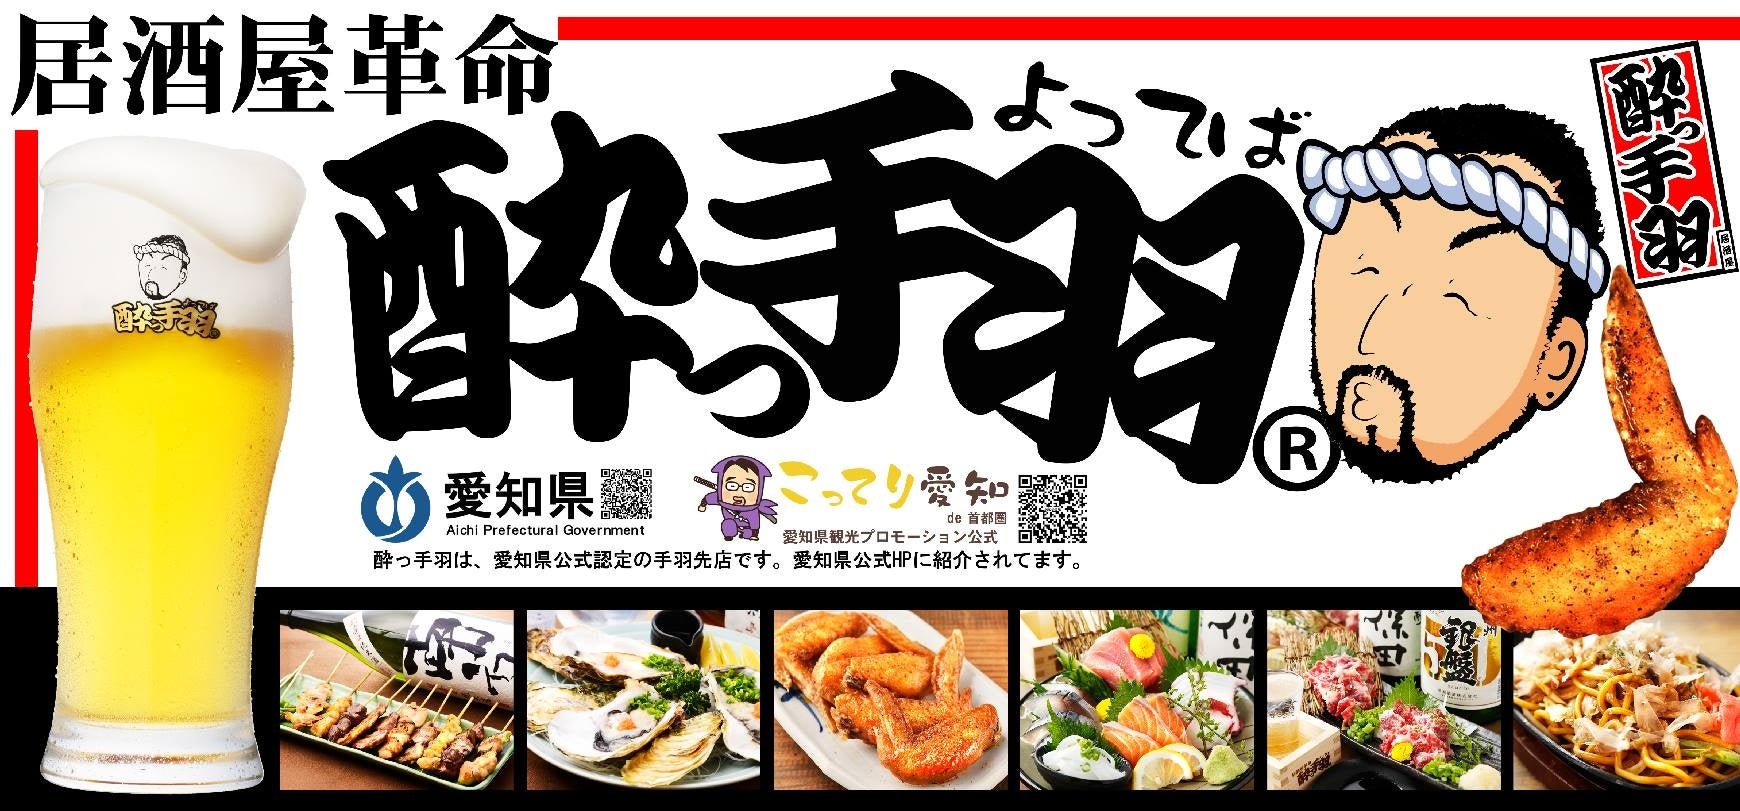 まい泉、歌舞伎の“くまどり”焼き印入りの「ポケットサンド」を５月３日よりTHEATER MILANO-Zaにて数量限定販売